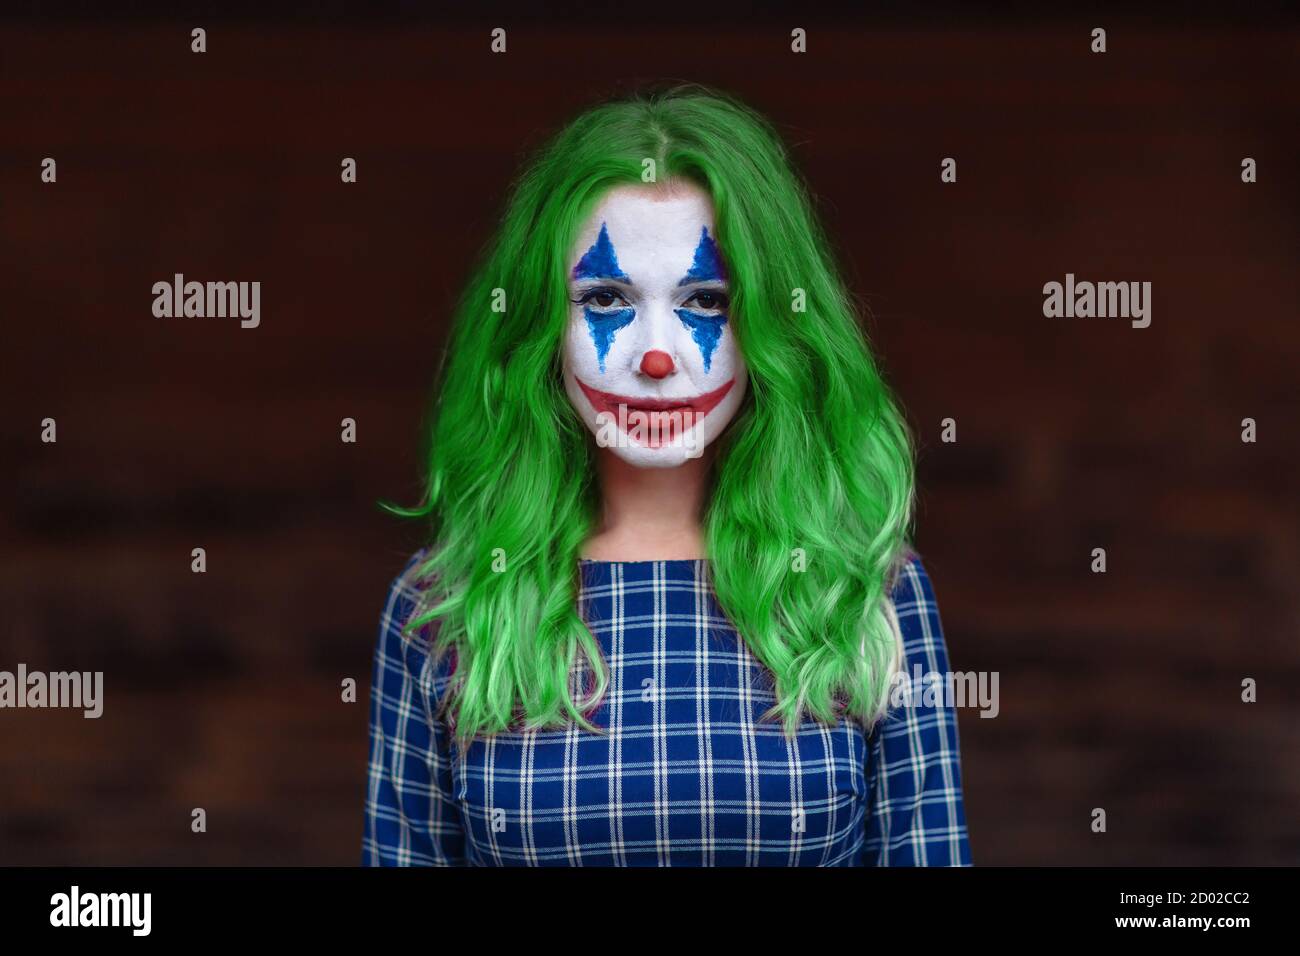 Nahaufnahme Porträt eines grünhaarigen Mädchen in gechicktem Kleid mit Joker Make-up auf einem verschwommenen braunen Hintergrund. Stockfoto